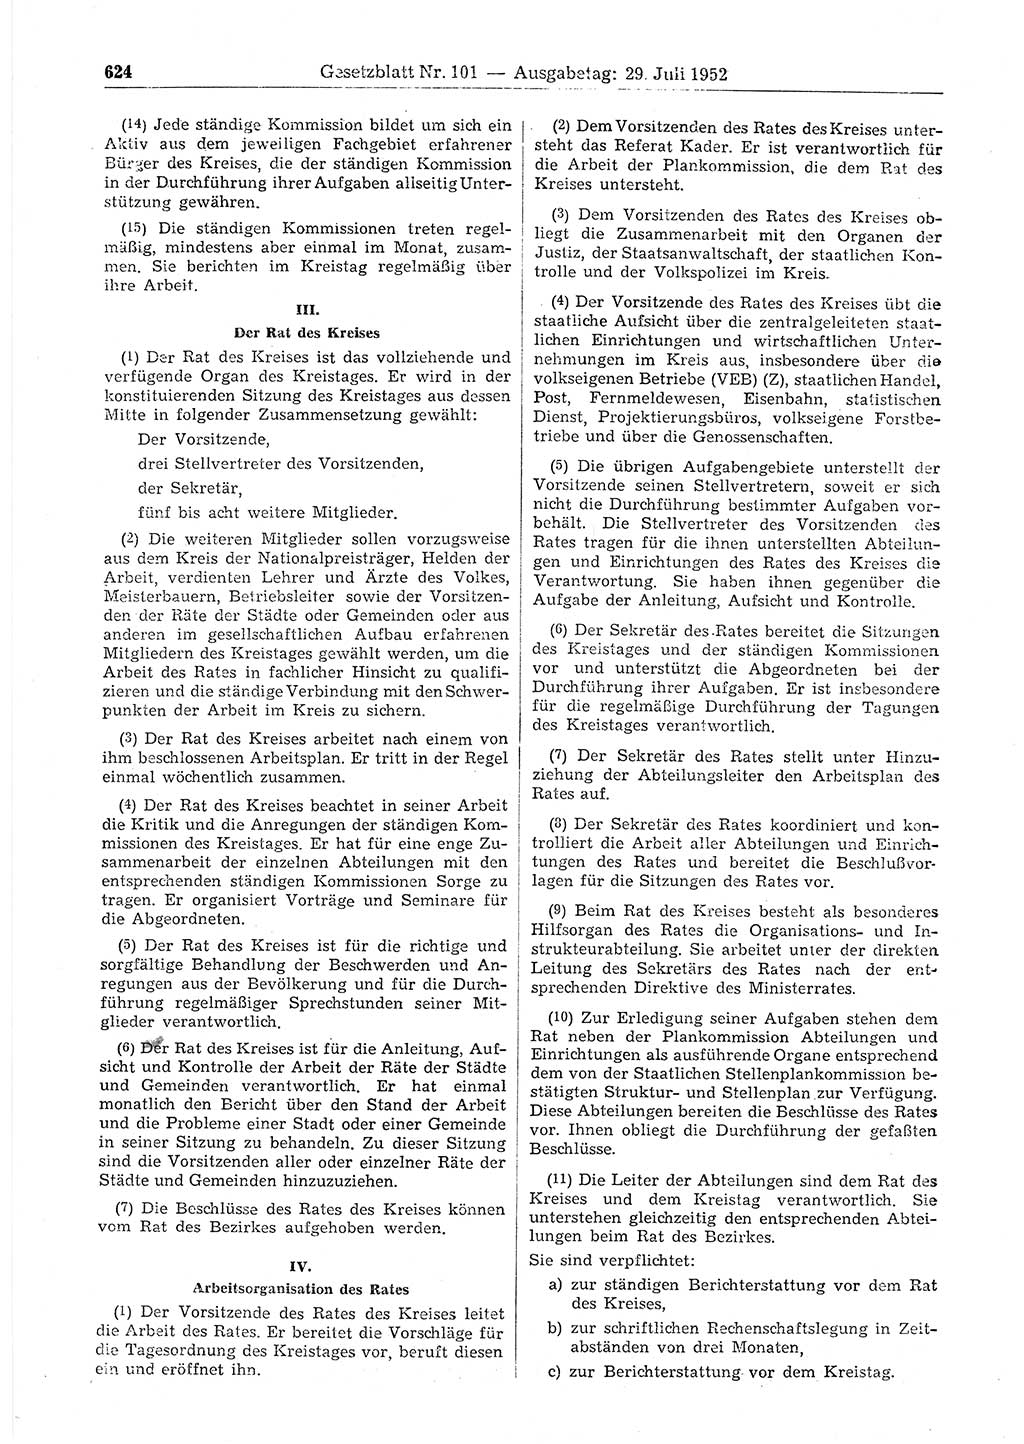 Gesetzblatt (GBl.) der Deutschen Demokratischen Republik (DDR) 1952, Seite 624 (GBl. DDR 1952, S. 624)